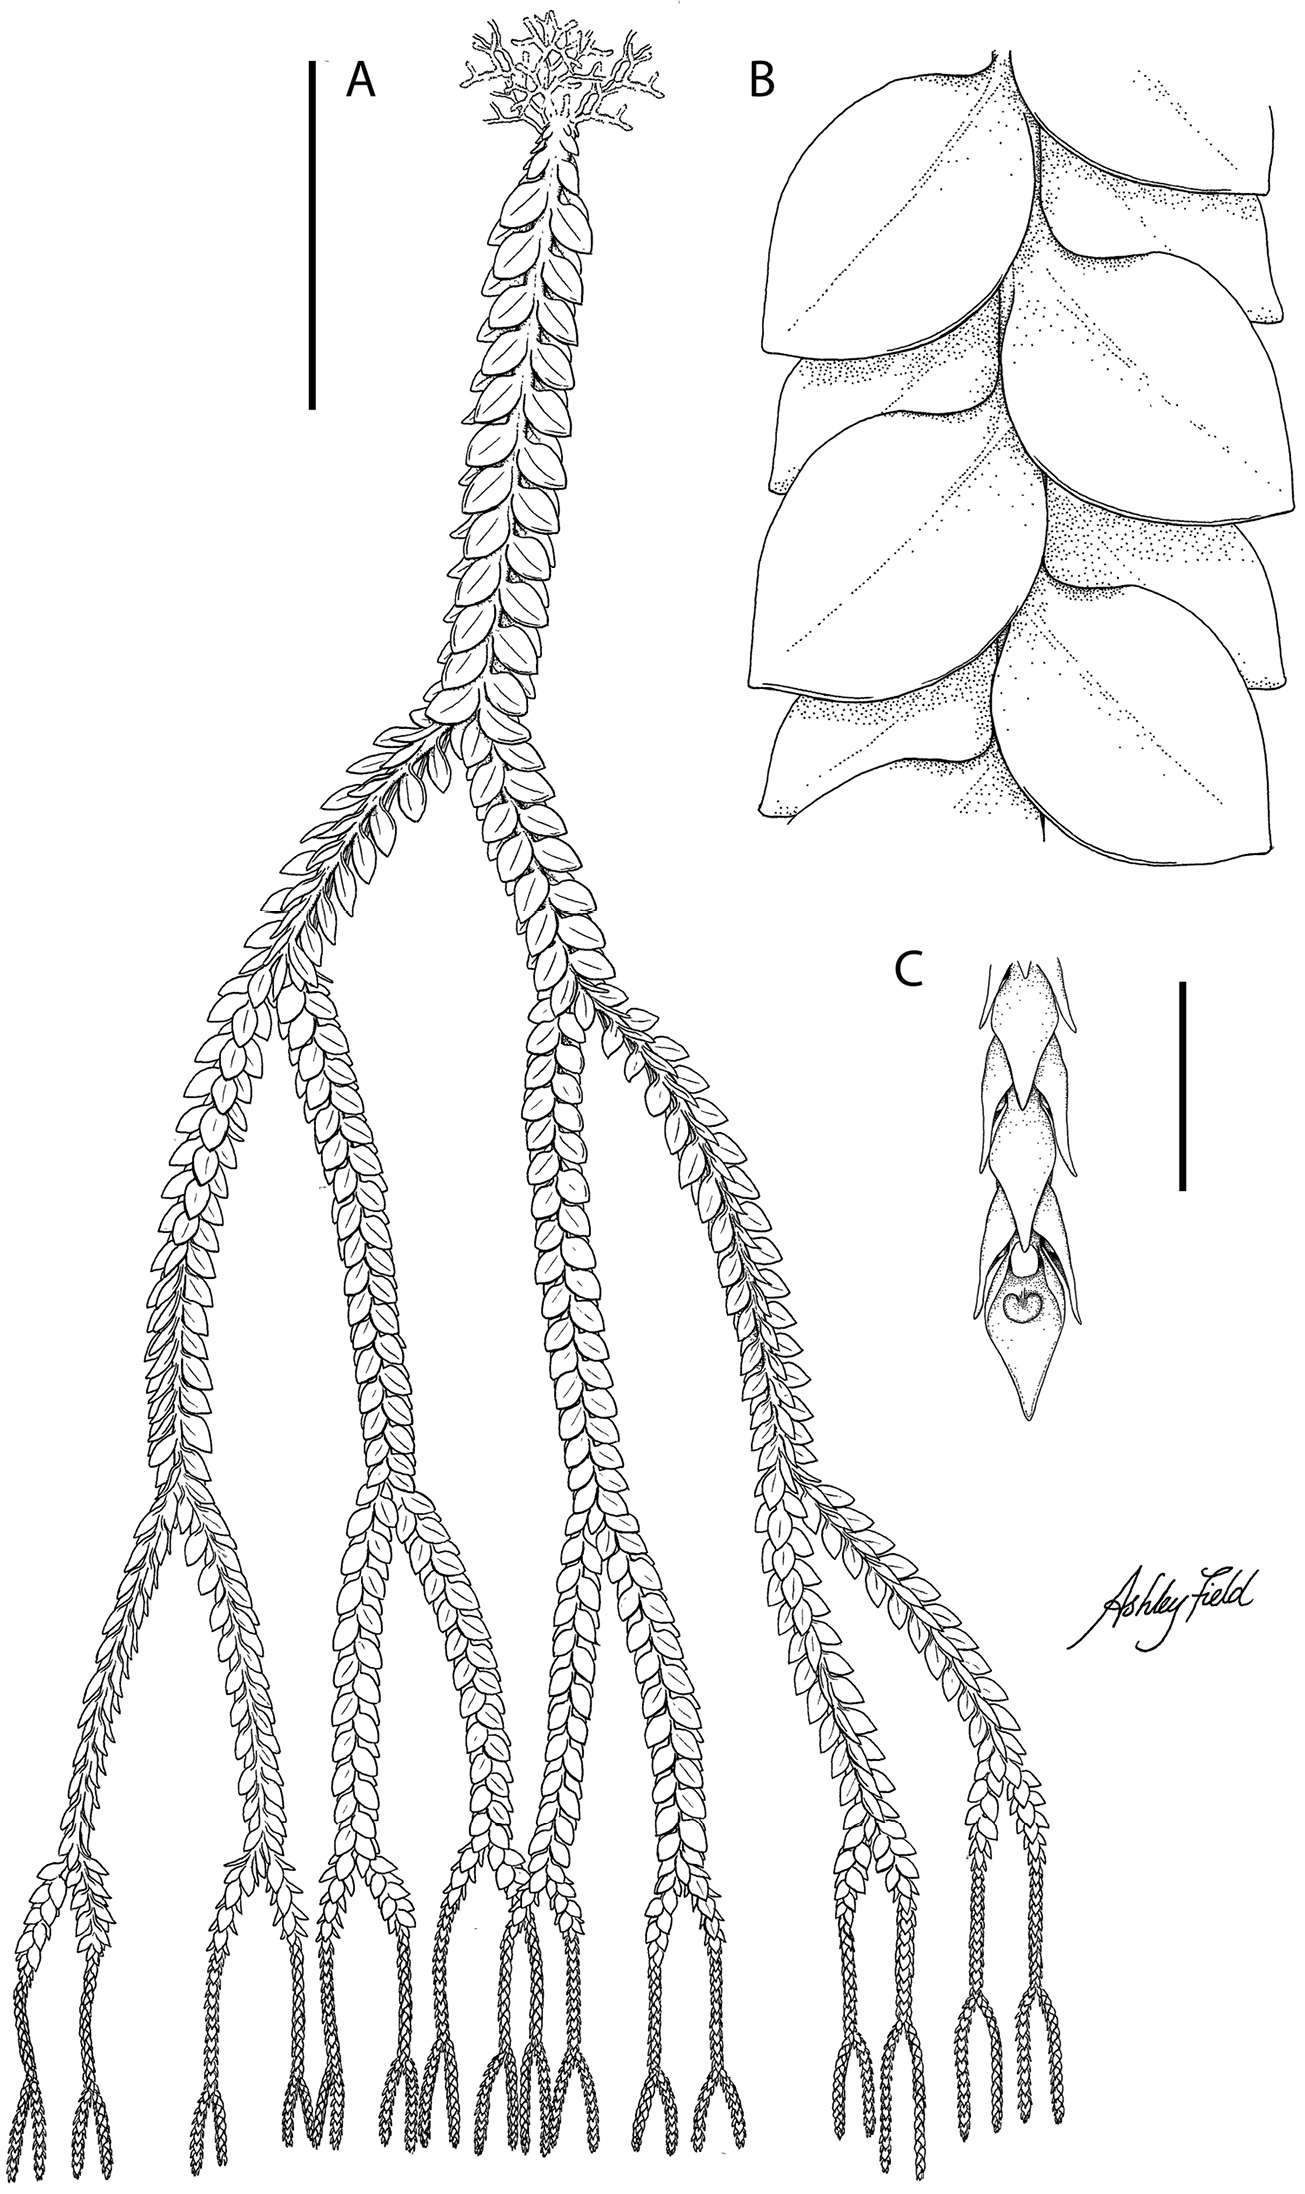 Plancia ëd Phlegmariurus vanuatuensis A. R. Field